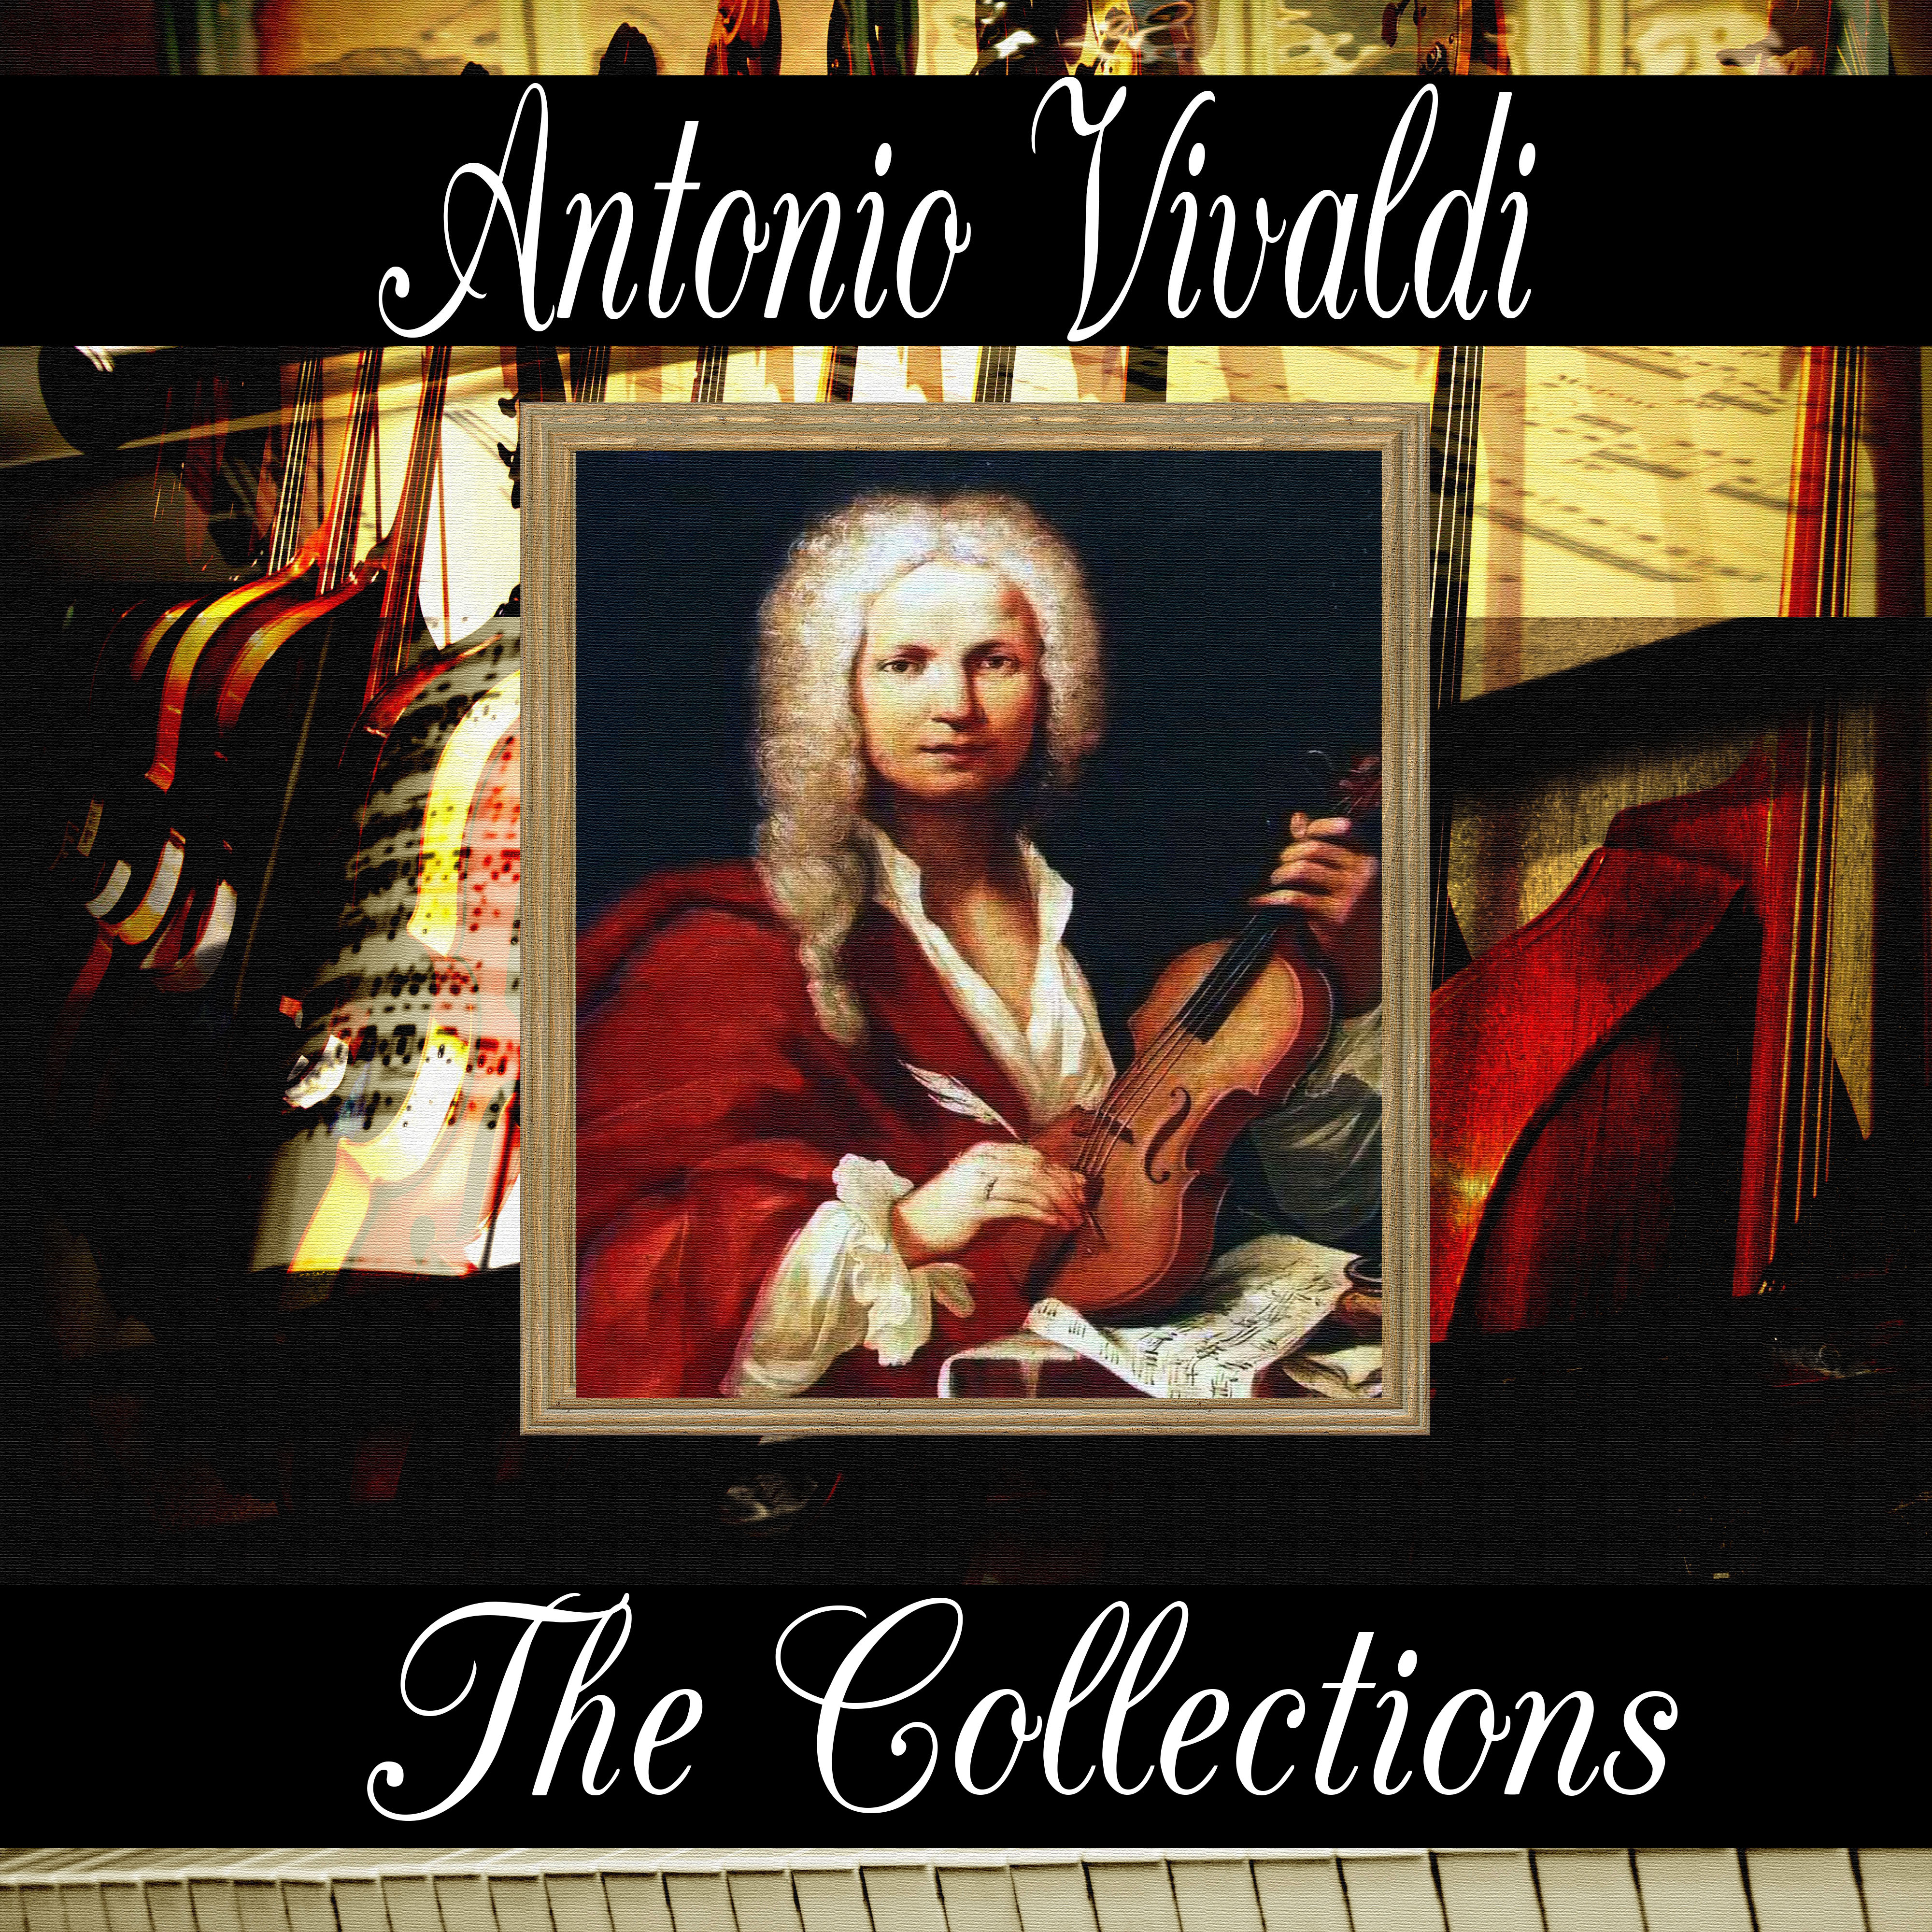 Antonio Vivaldi: The Collection